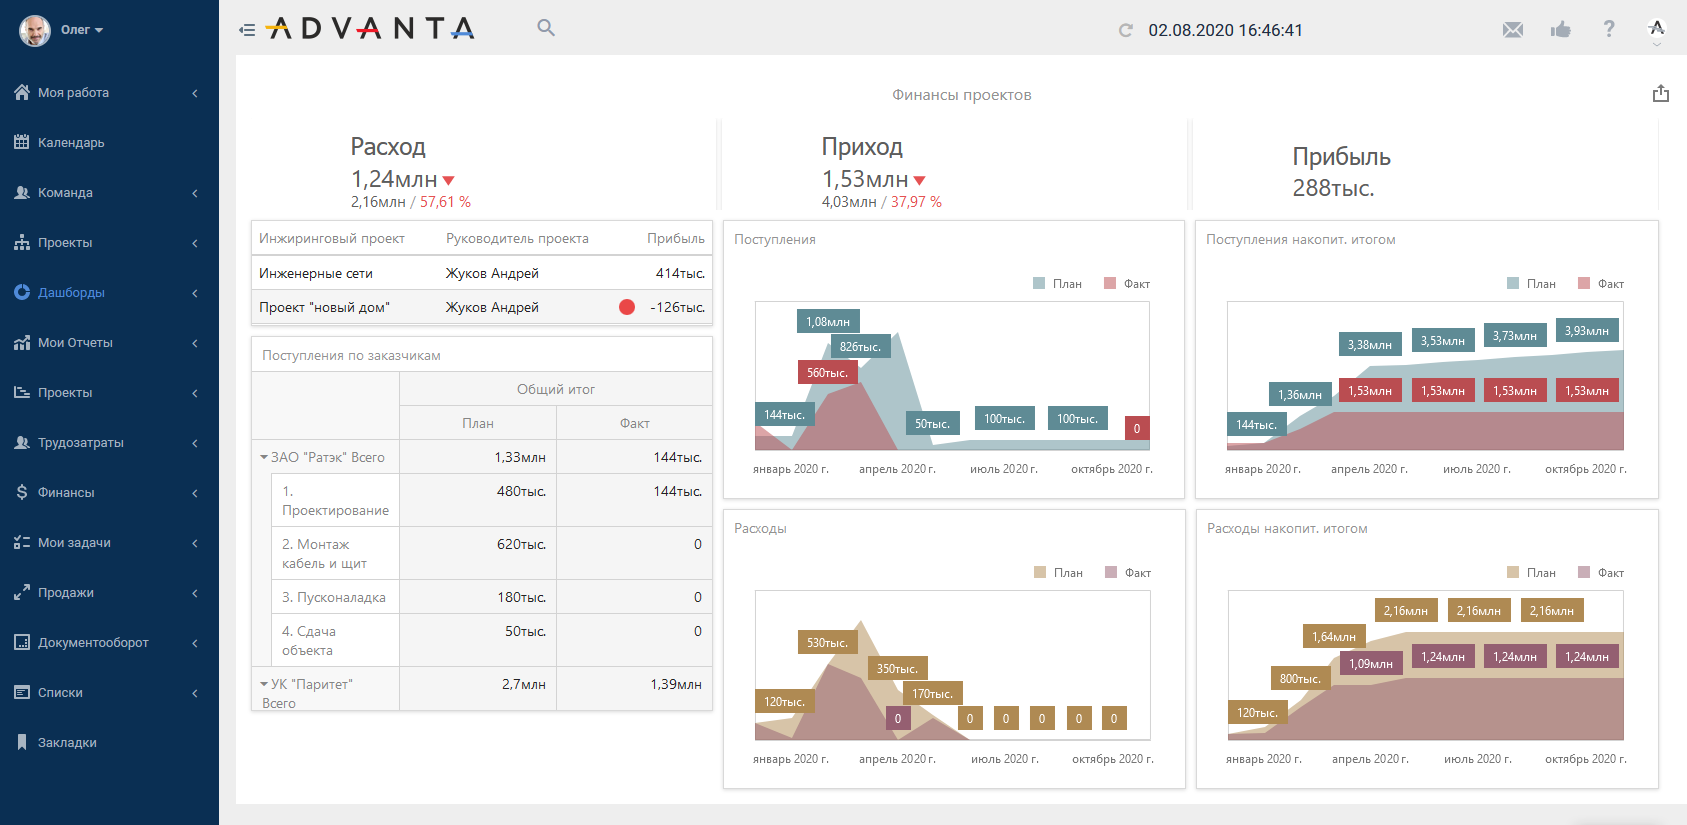 Информационная аналитическая панель показателей управления подразделением или компанией в ПО ADVANTA